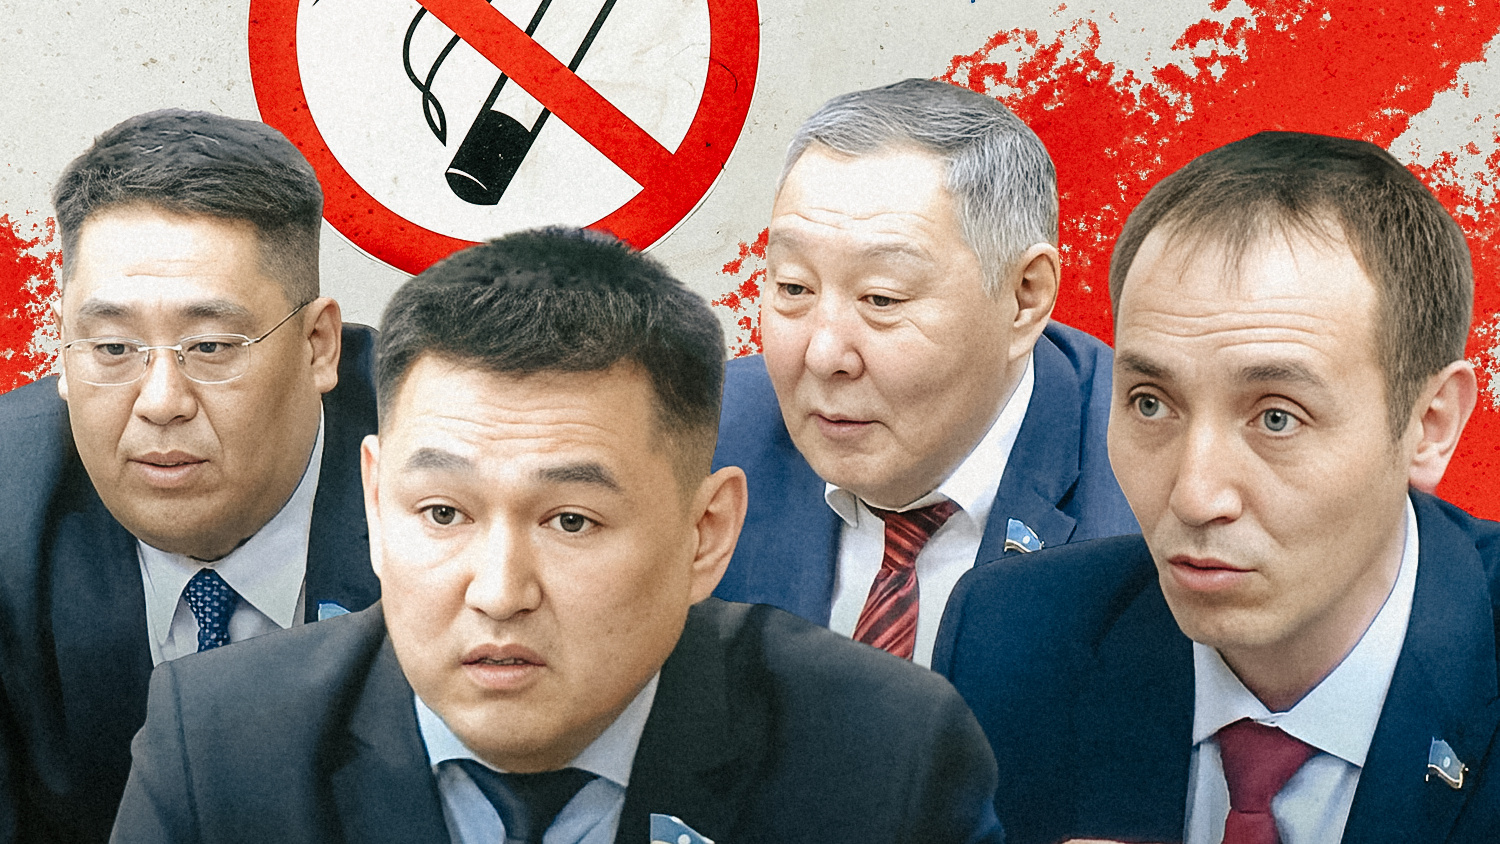 «Почему именно 15 метров?»: якутянам хотят запретить курить в новых местах. Вопрос вызвал споры в Ил Тумэн